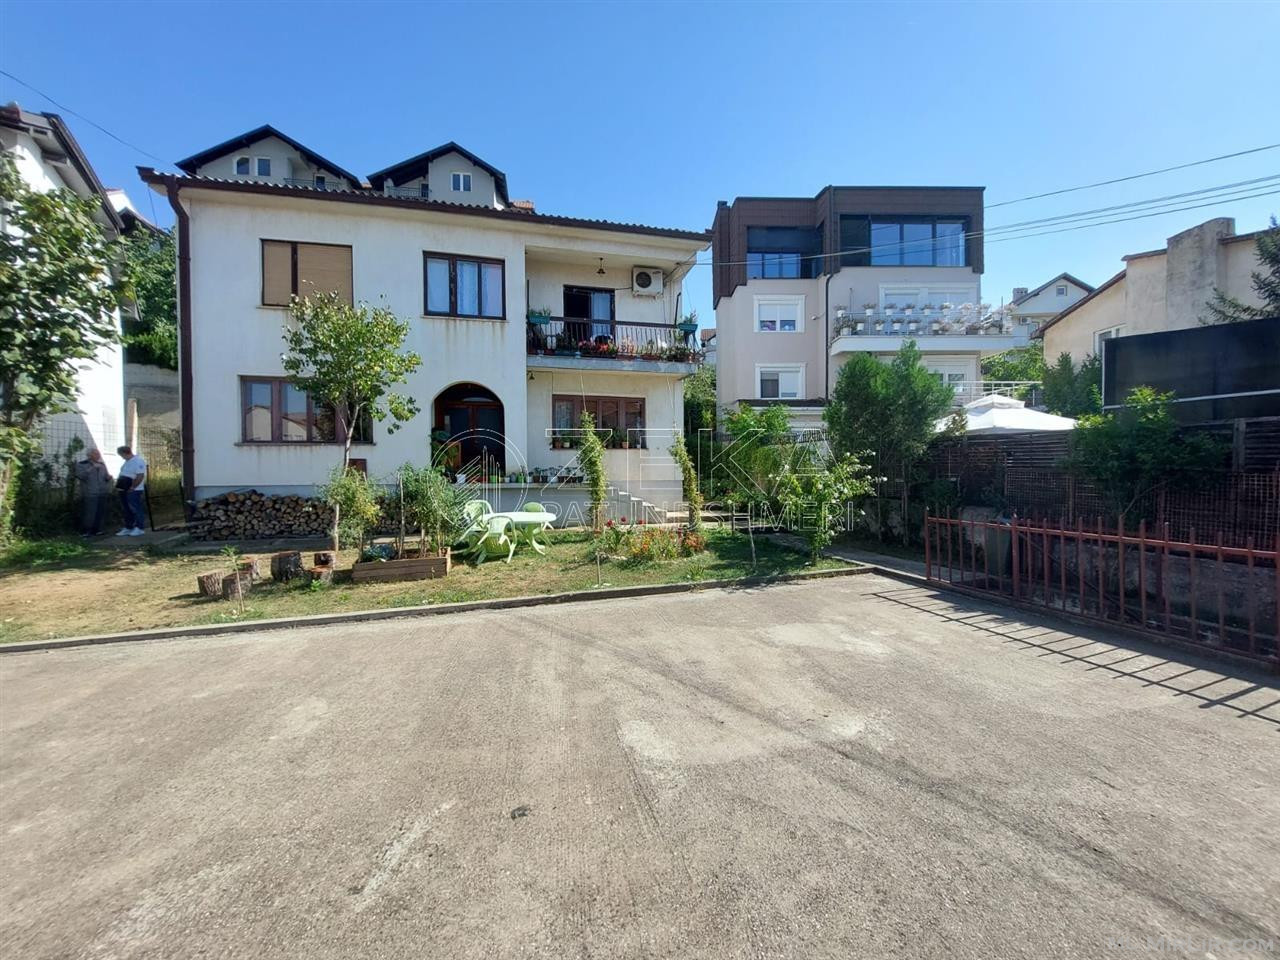 Shtëpi në shitje në Prishtinë